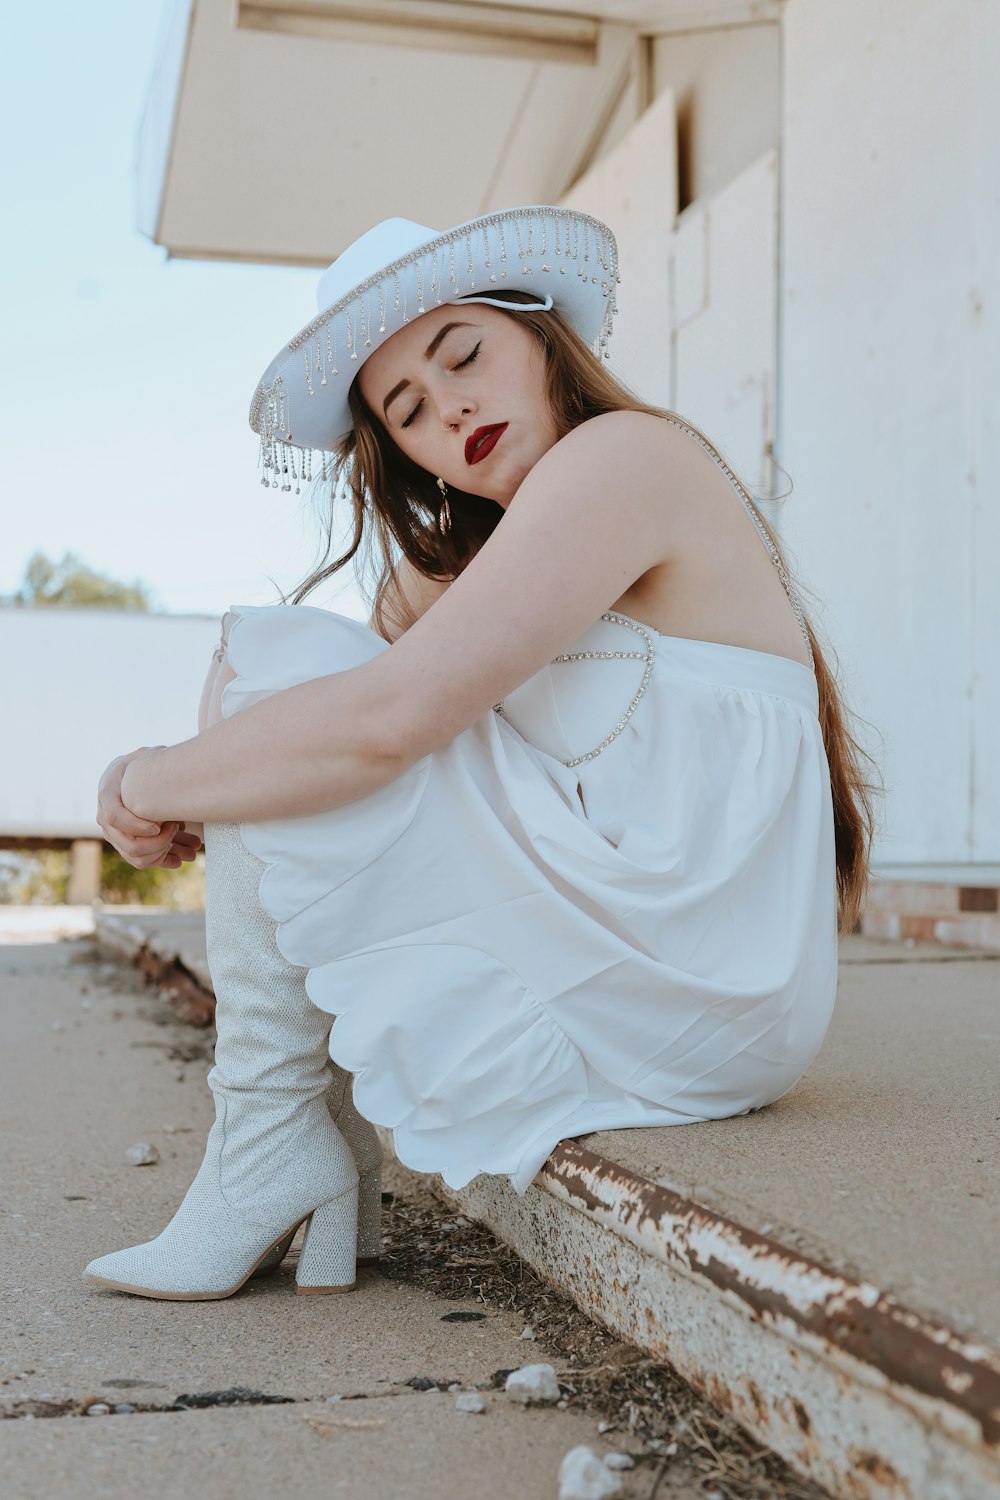 Une femme en robe blanche et chapeau assise par terre